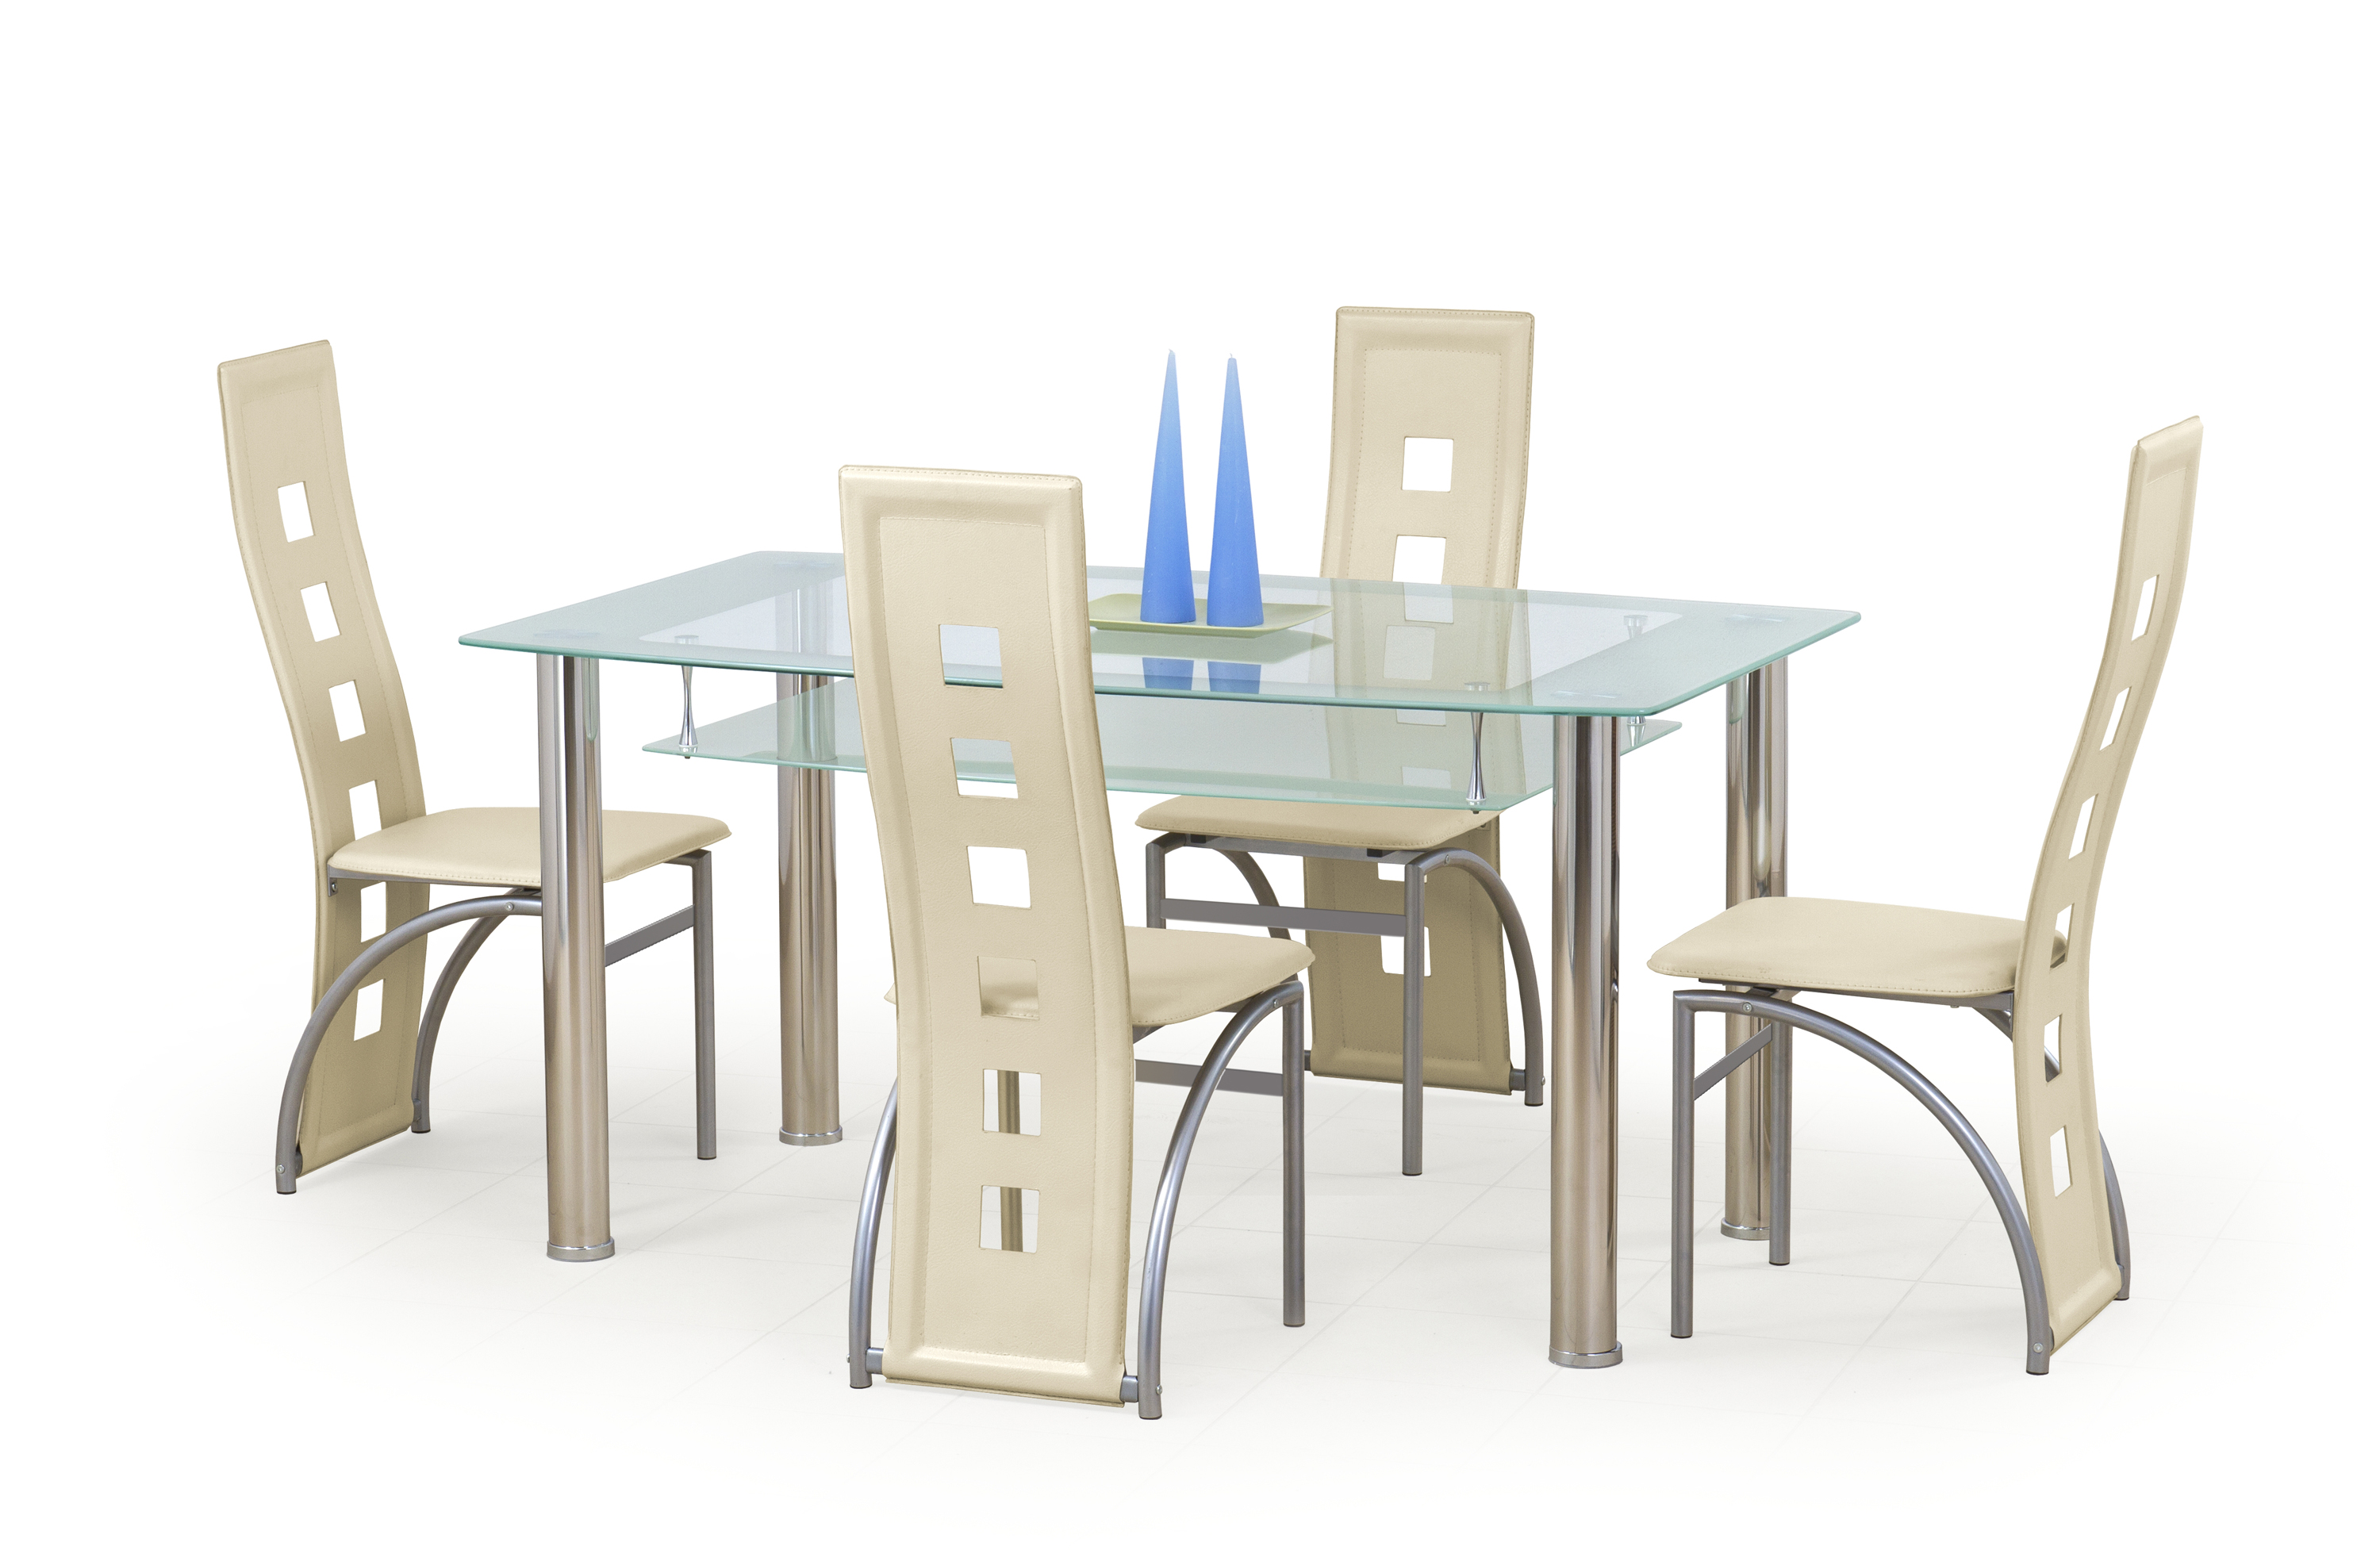 Cristal asztal - bézs / tej színű stůl cristal - béžovýbarvý / mléčný